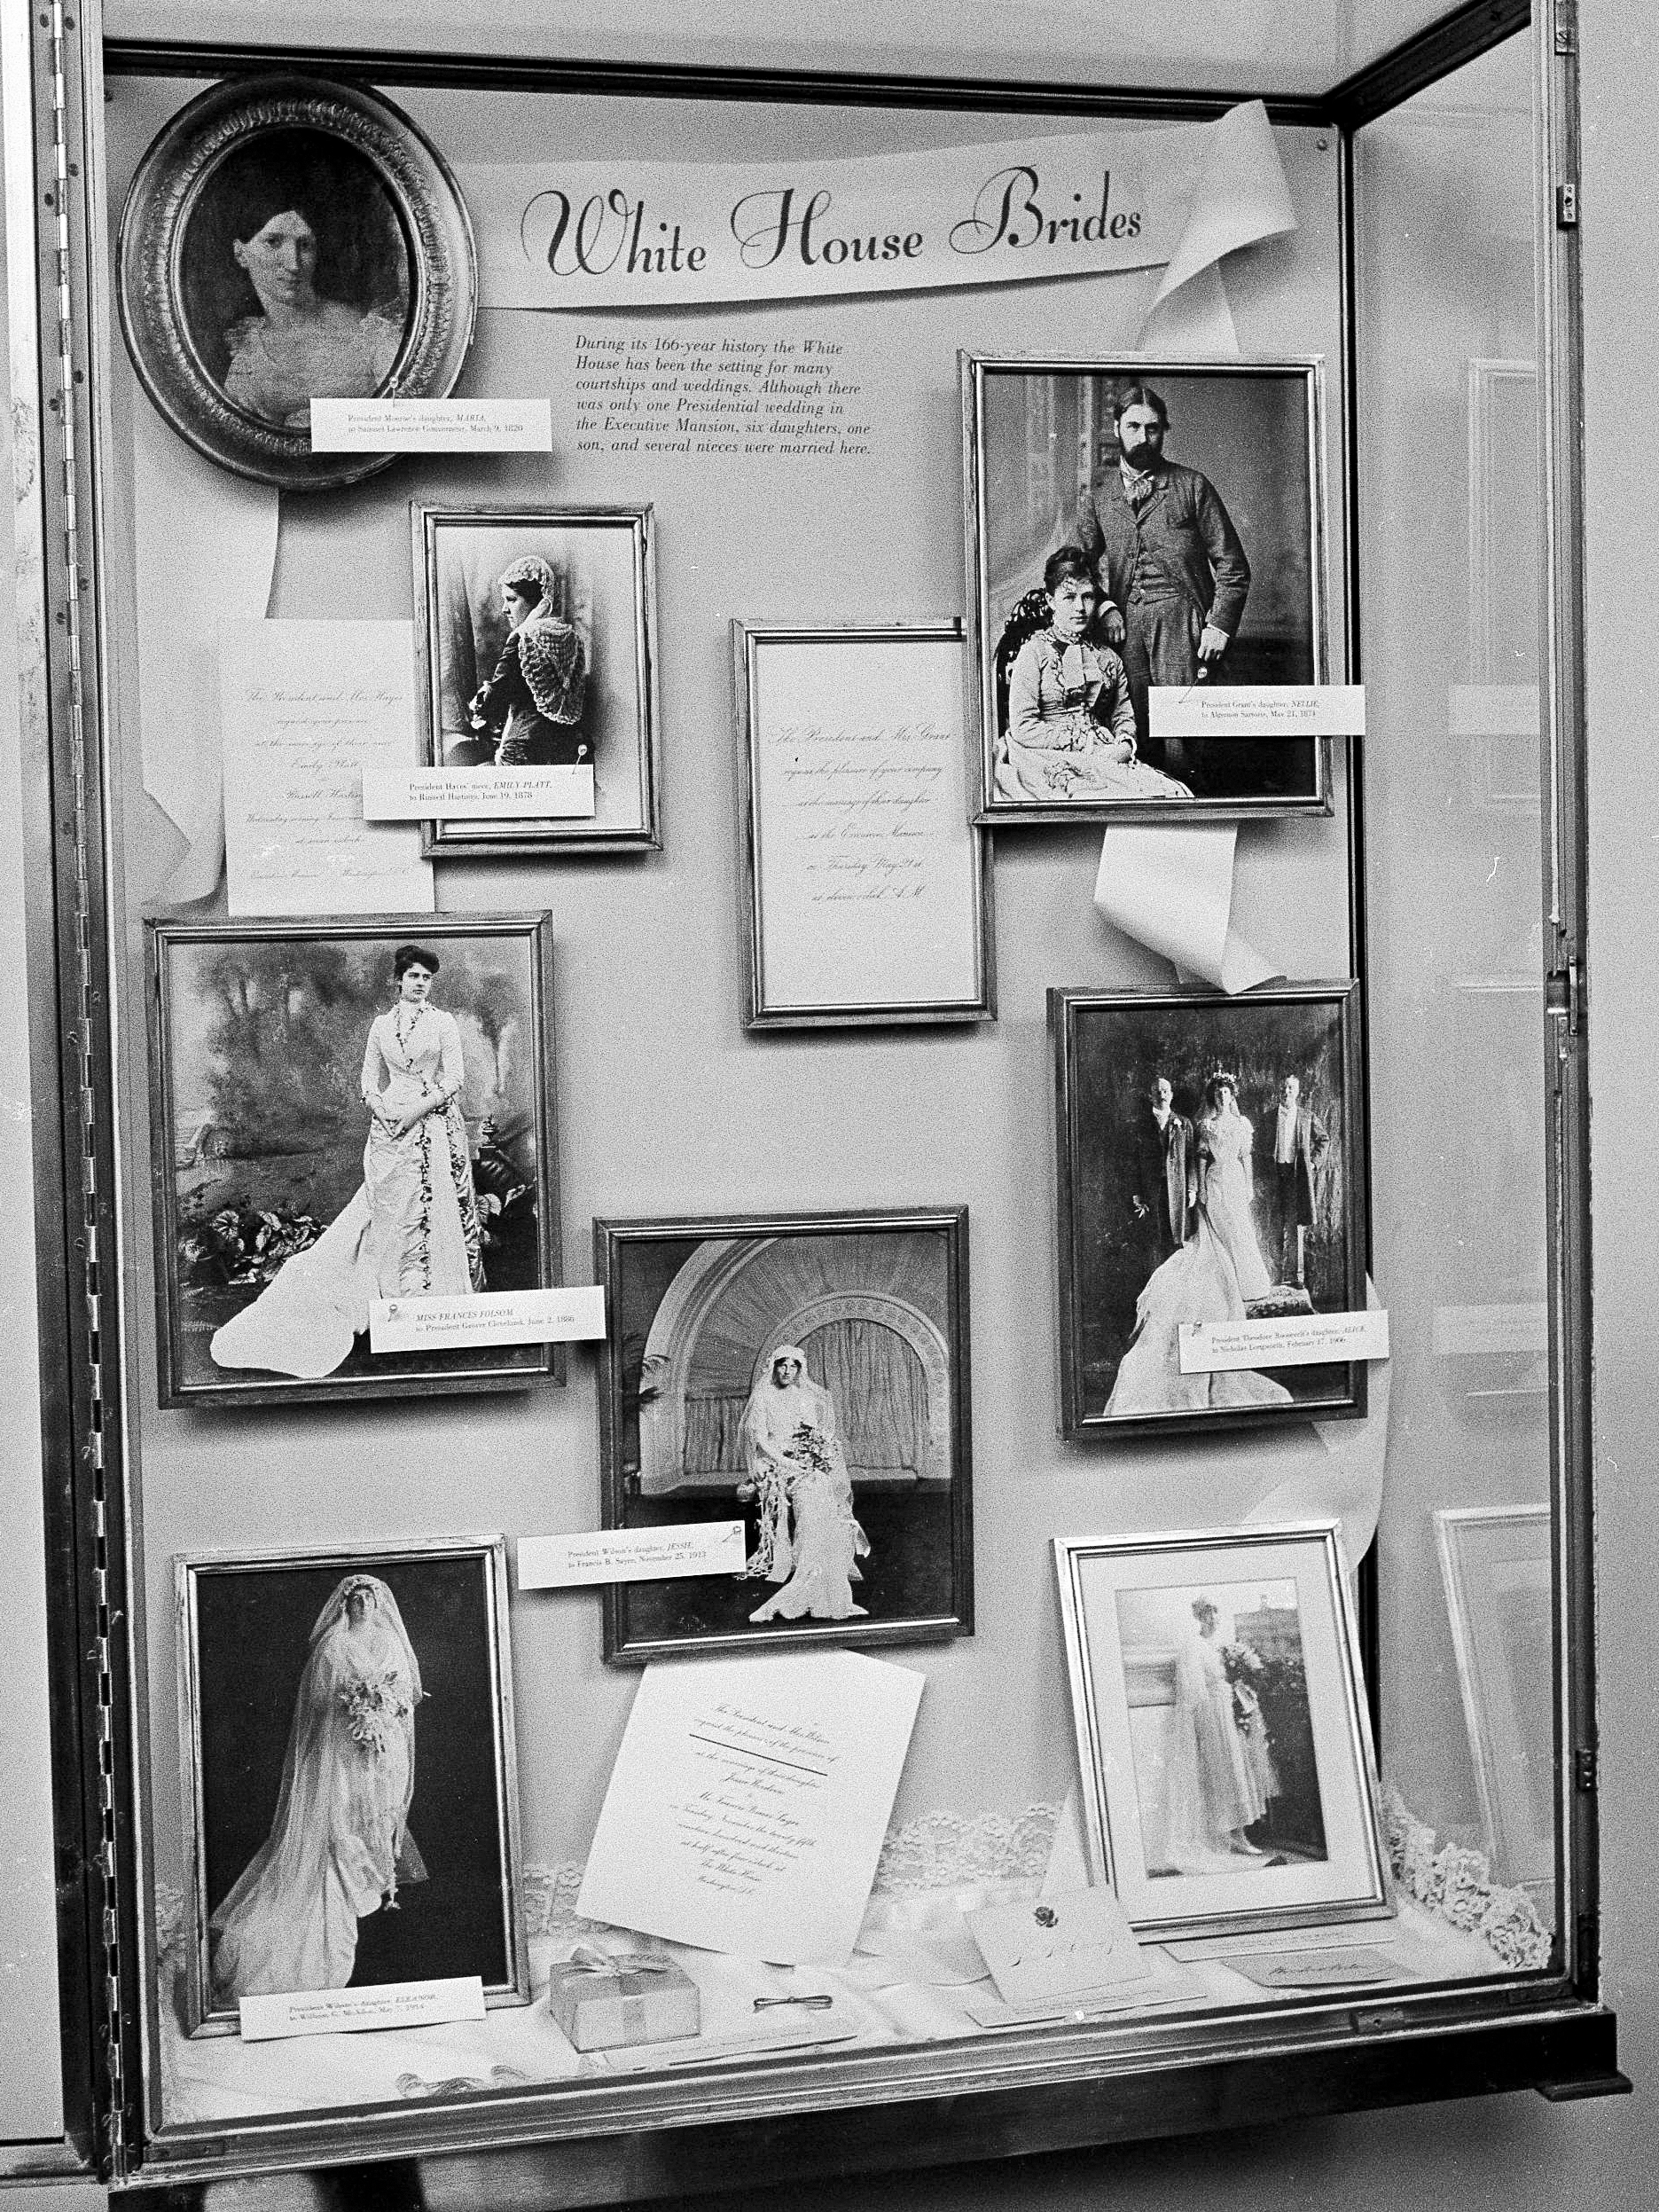 ARCHIVO - Fotografías de novias casadas en la Casa Blanca se exhiben en la mansión ejecutiva en un estuche acristalado en Washington (Foto AP)

